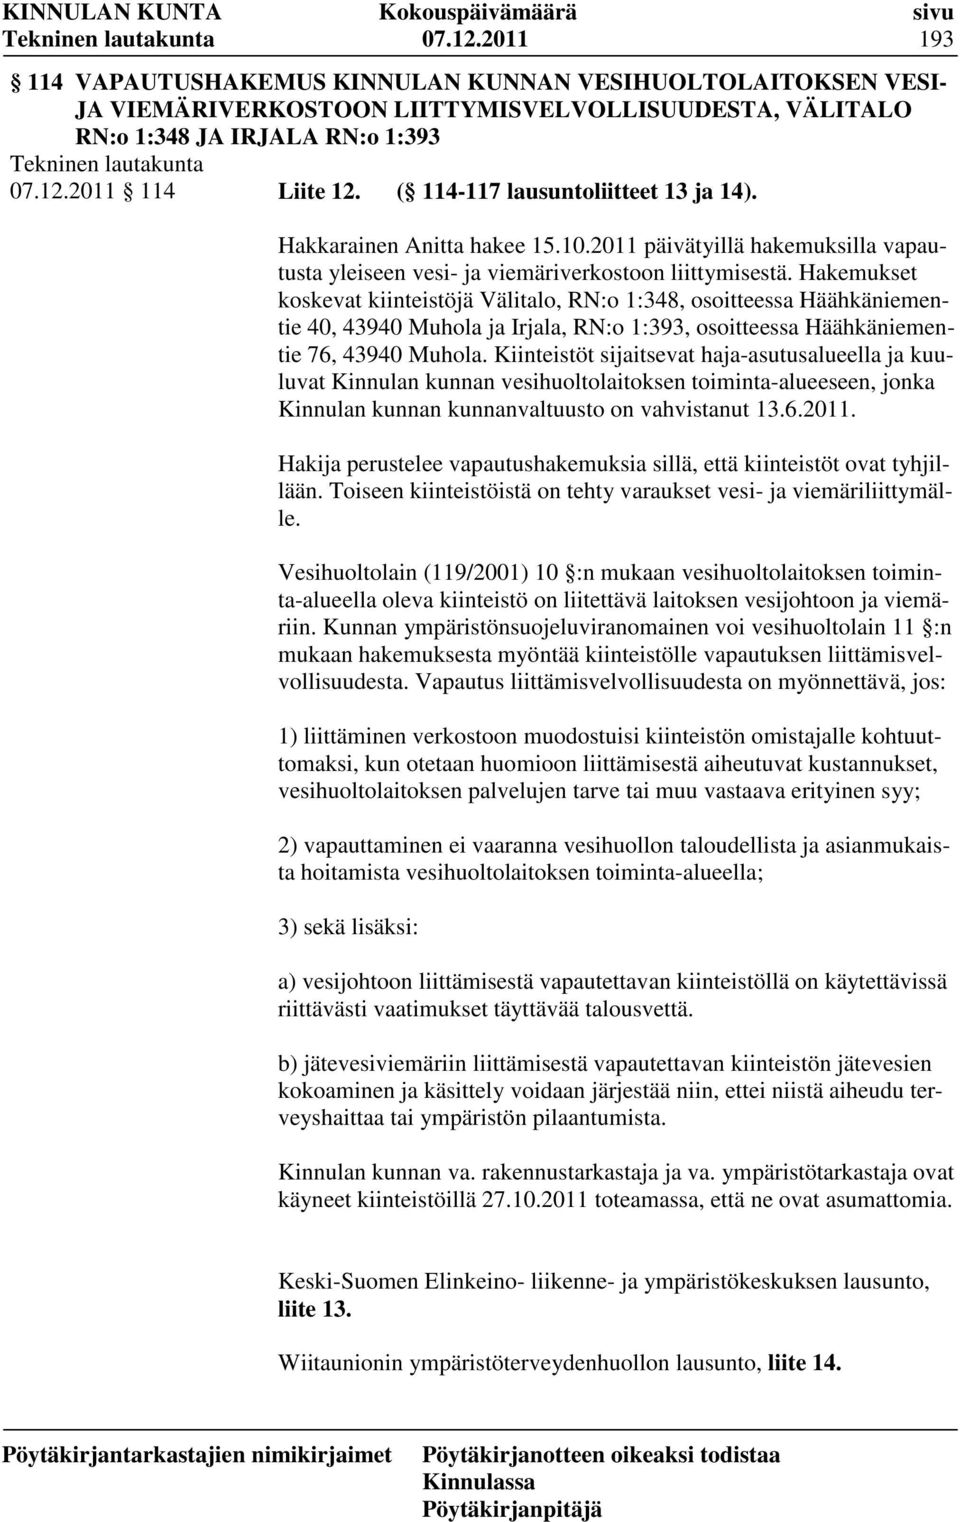 Hakemukset koskevat kiinteistöjä Välitalo, RN:o 1:348, osoitteessa Häähkäniementie 40, 43940 Muhola ja Irjala, RN:o 1:393, osoitteessa Häähkäniementie 76, 43940 Muhola.